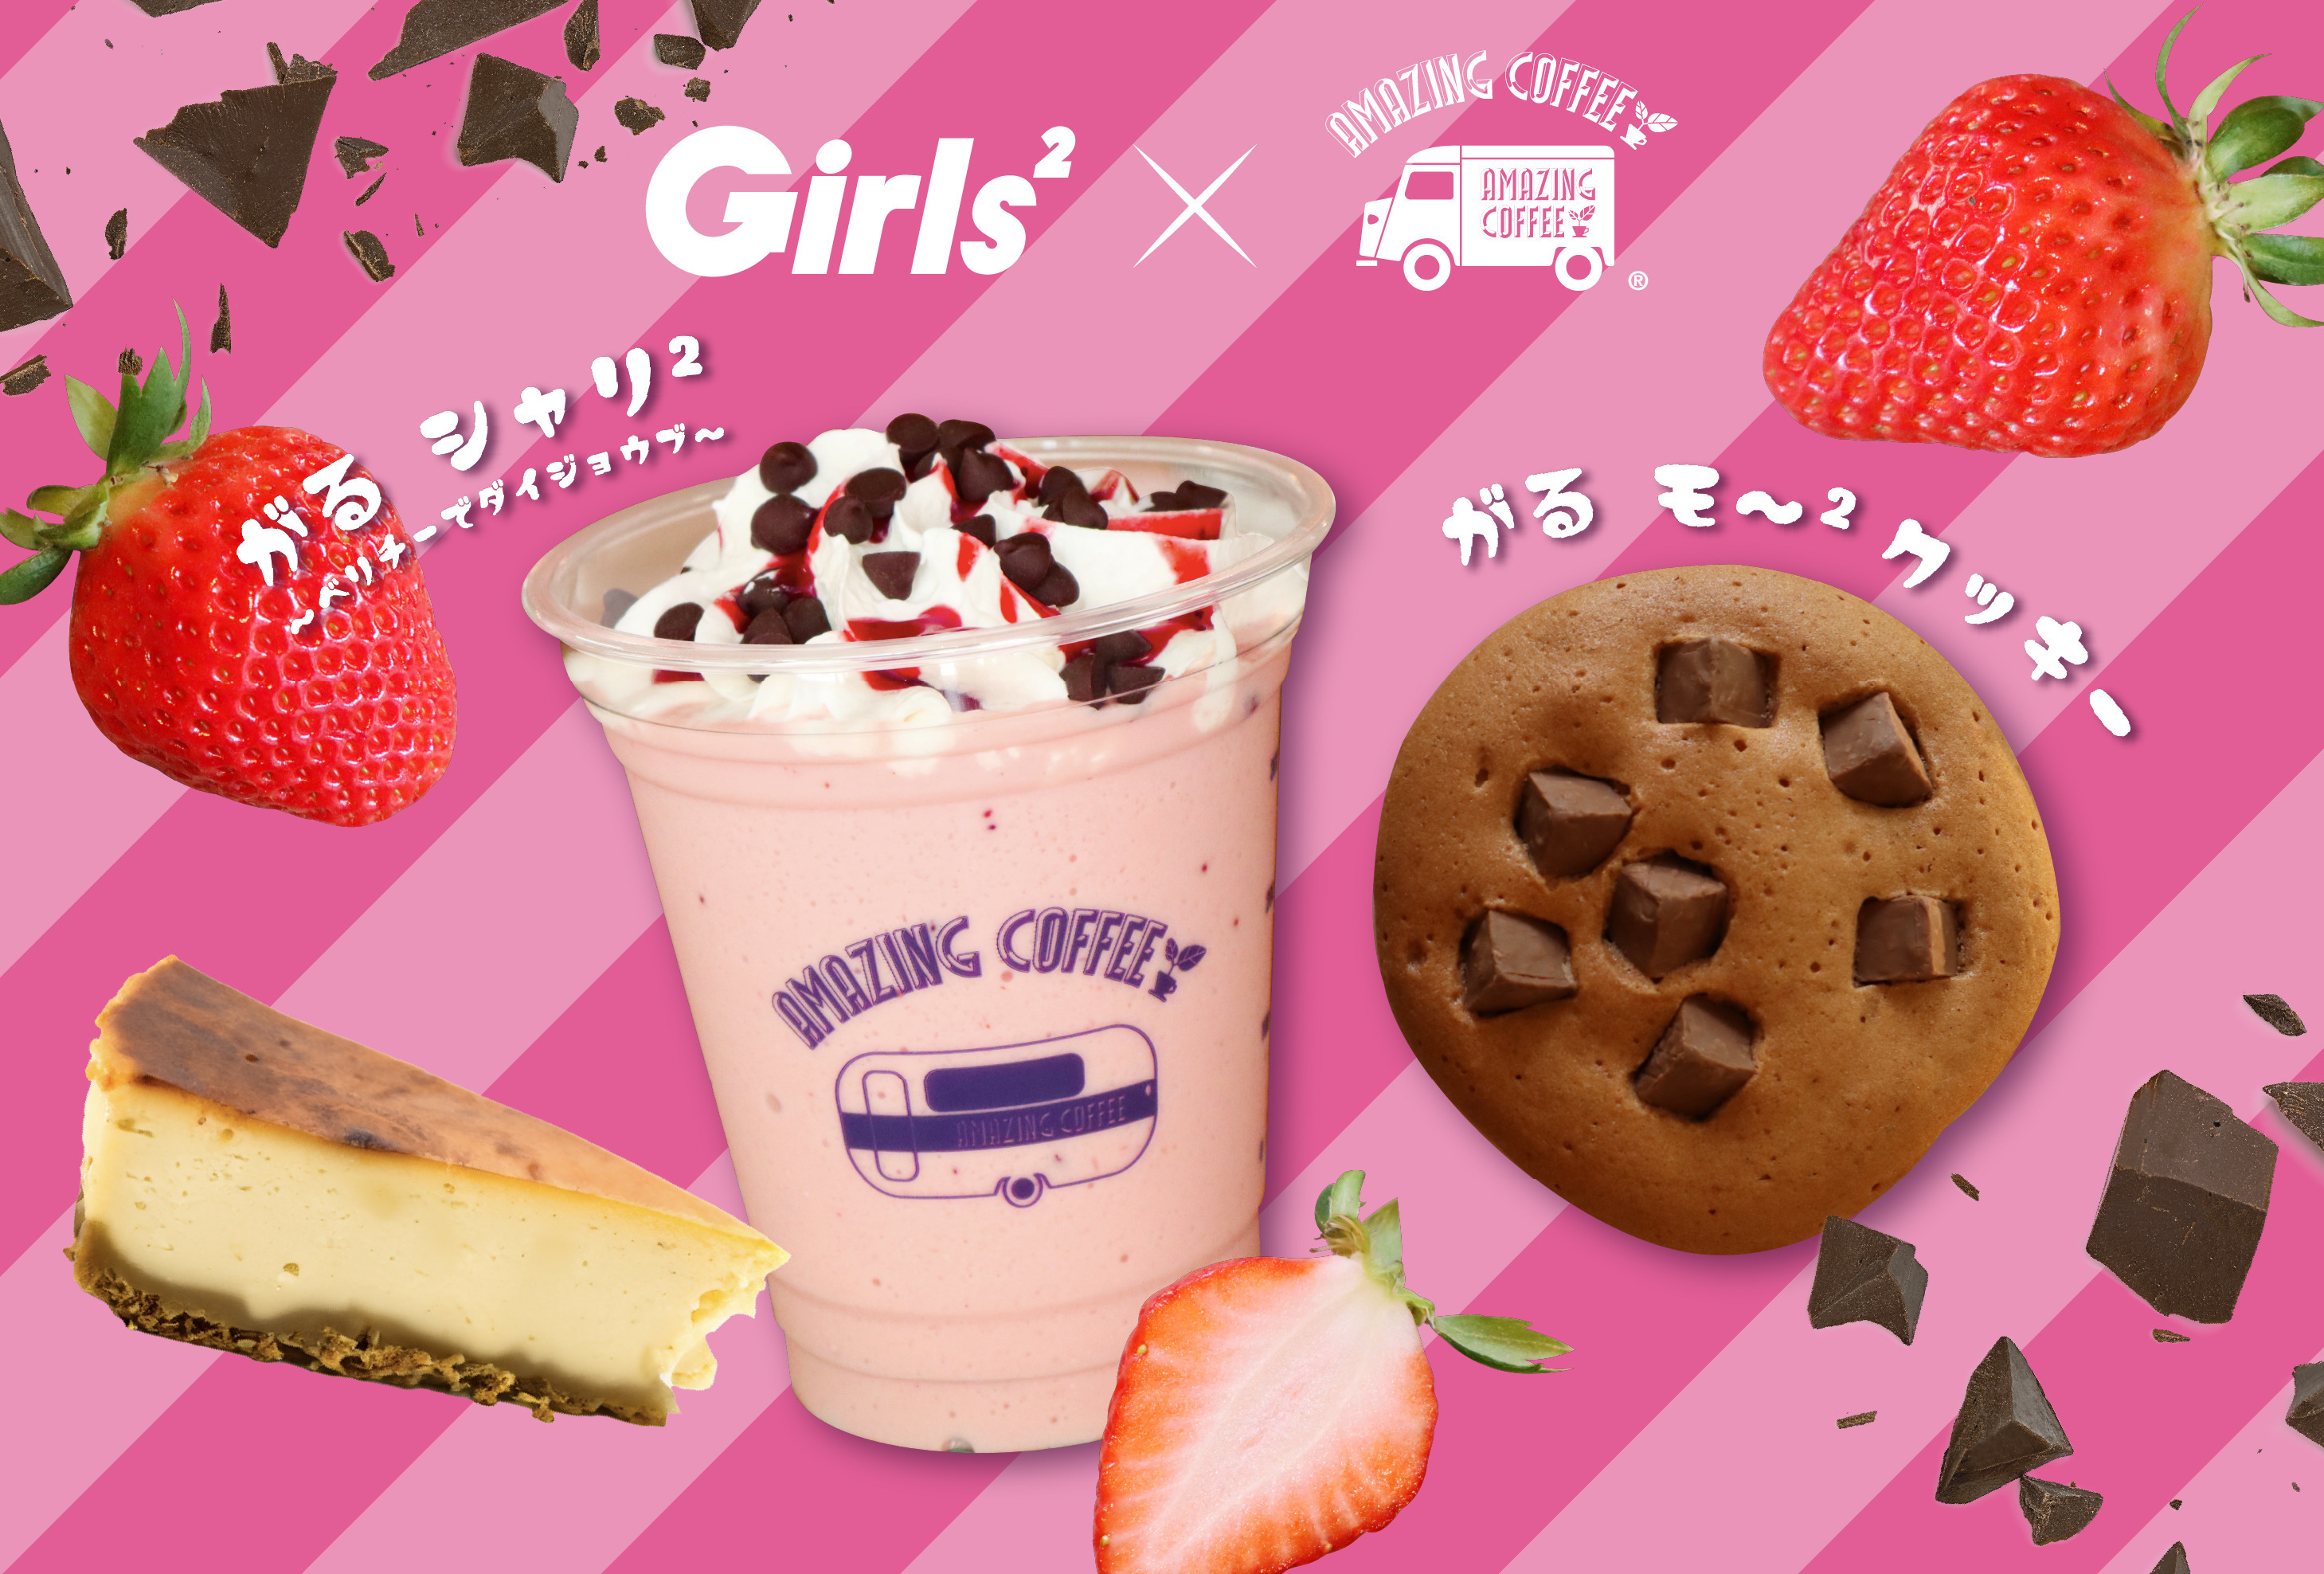 【6月15日(土)START!!】Girls²×AMAZING COFFEE スペシャルコラボレーション決定★